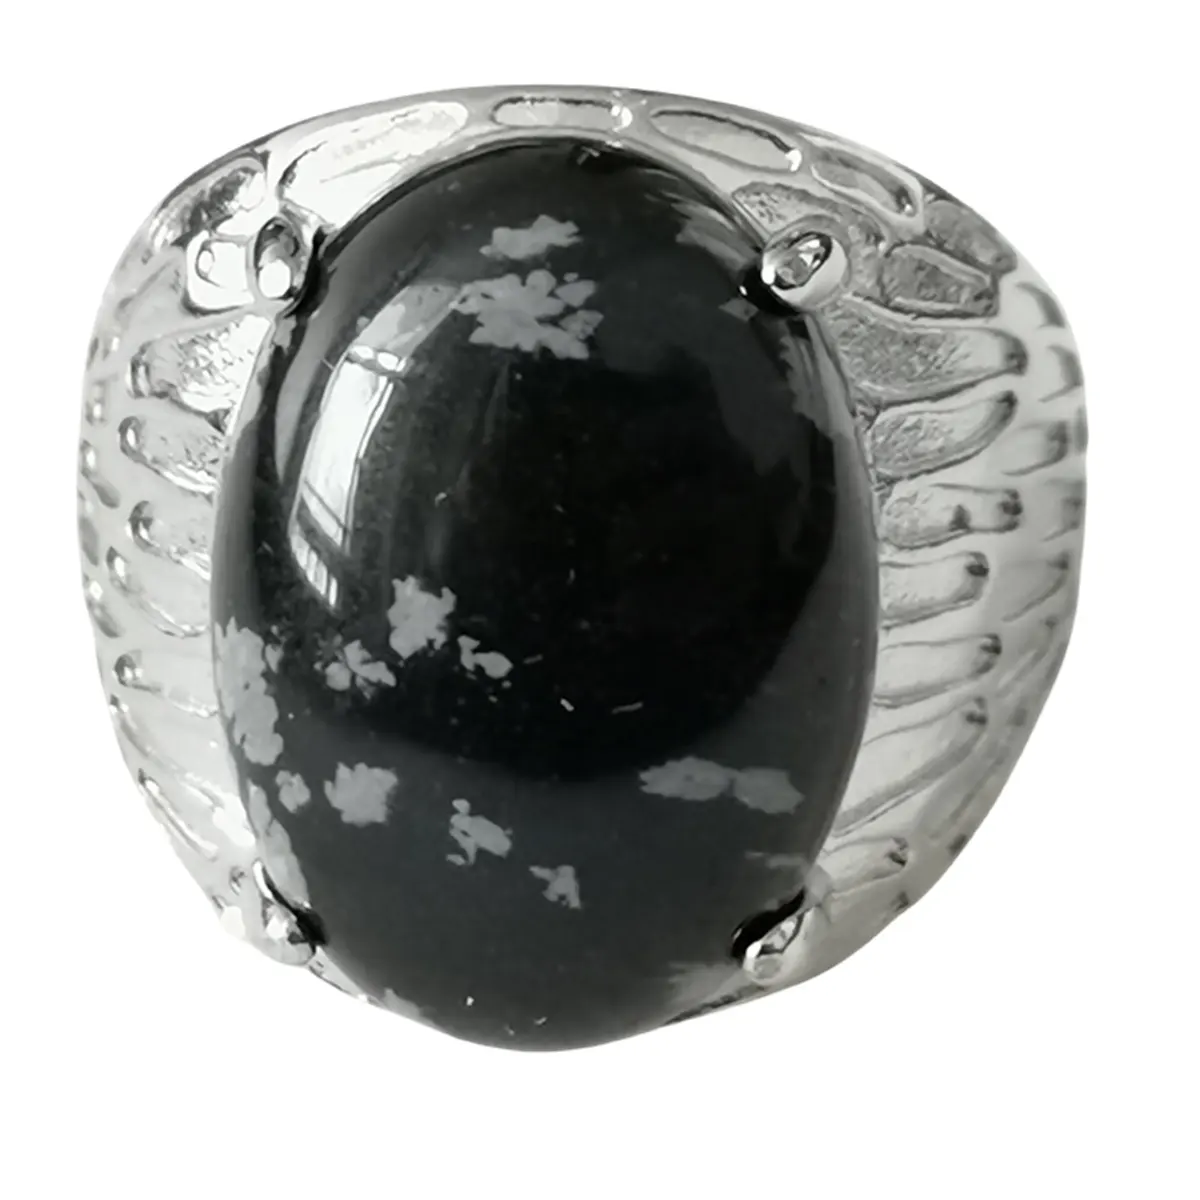 공장 도매 실버 타원형 크리스탈 반지 여성용 조정 가능한 손가락 보석 네일 반지